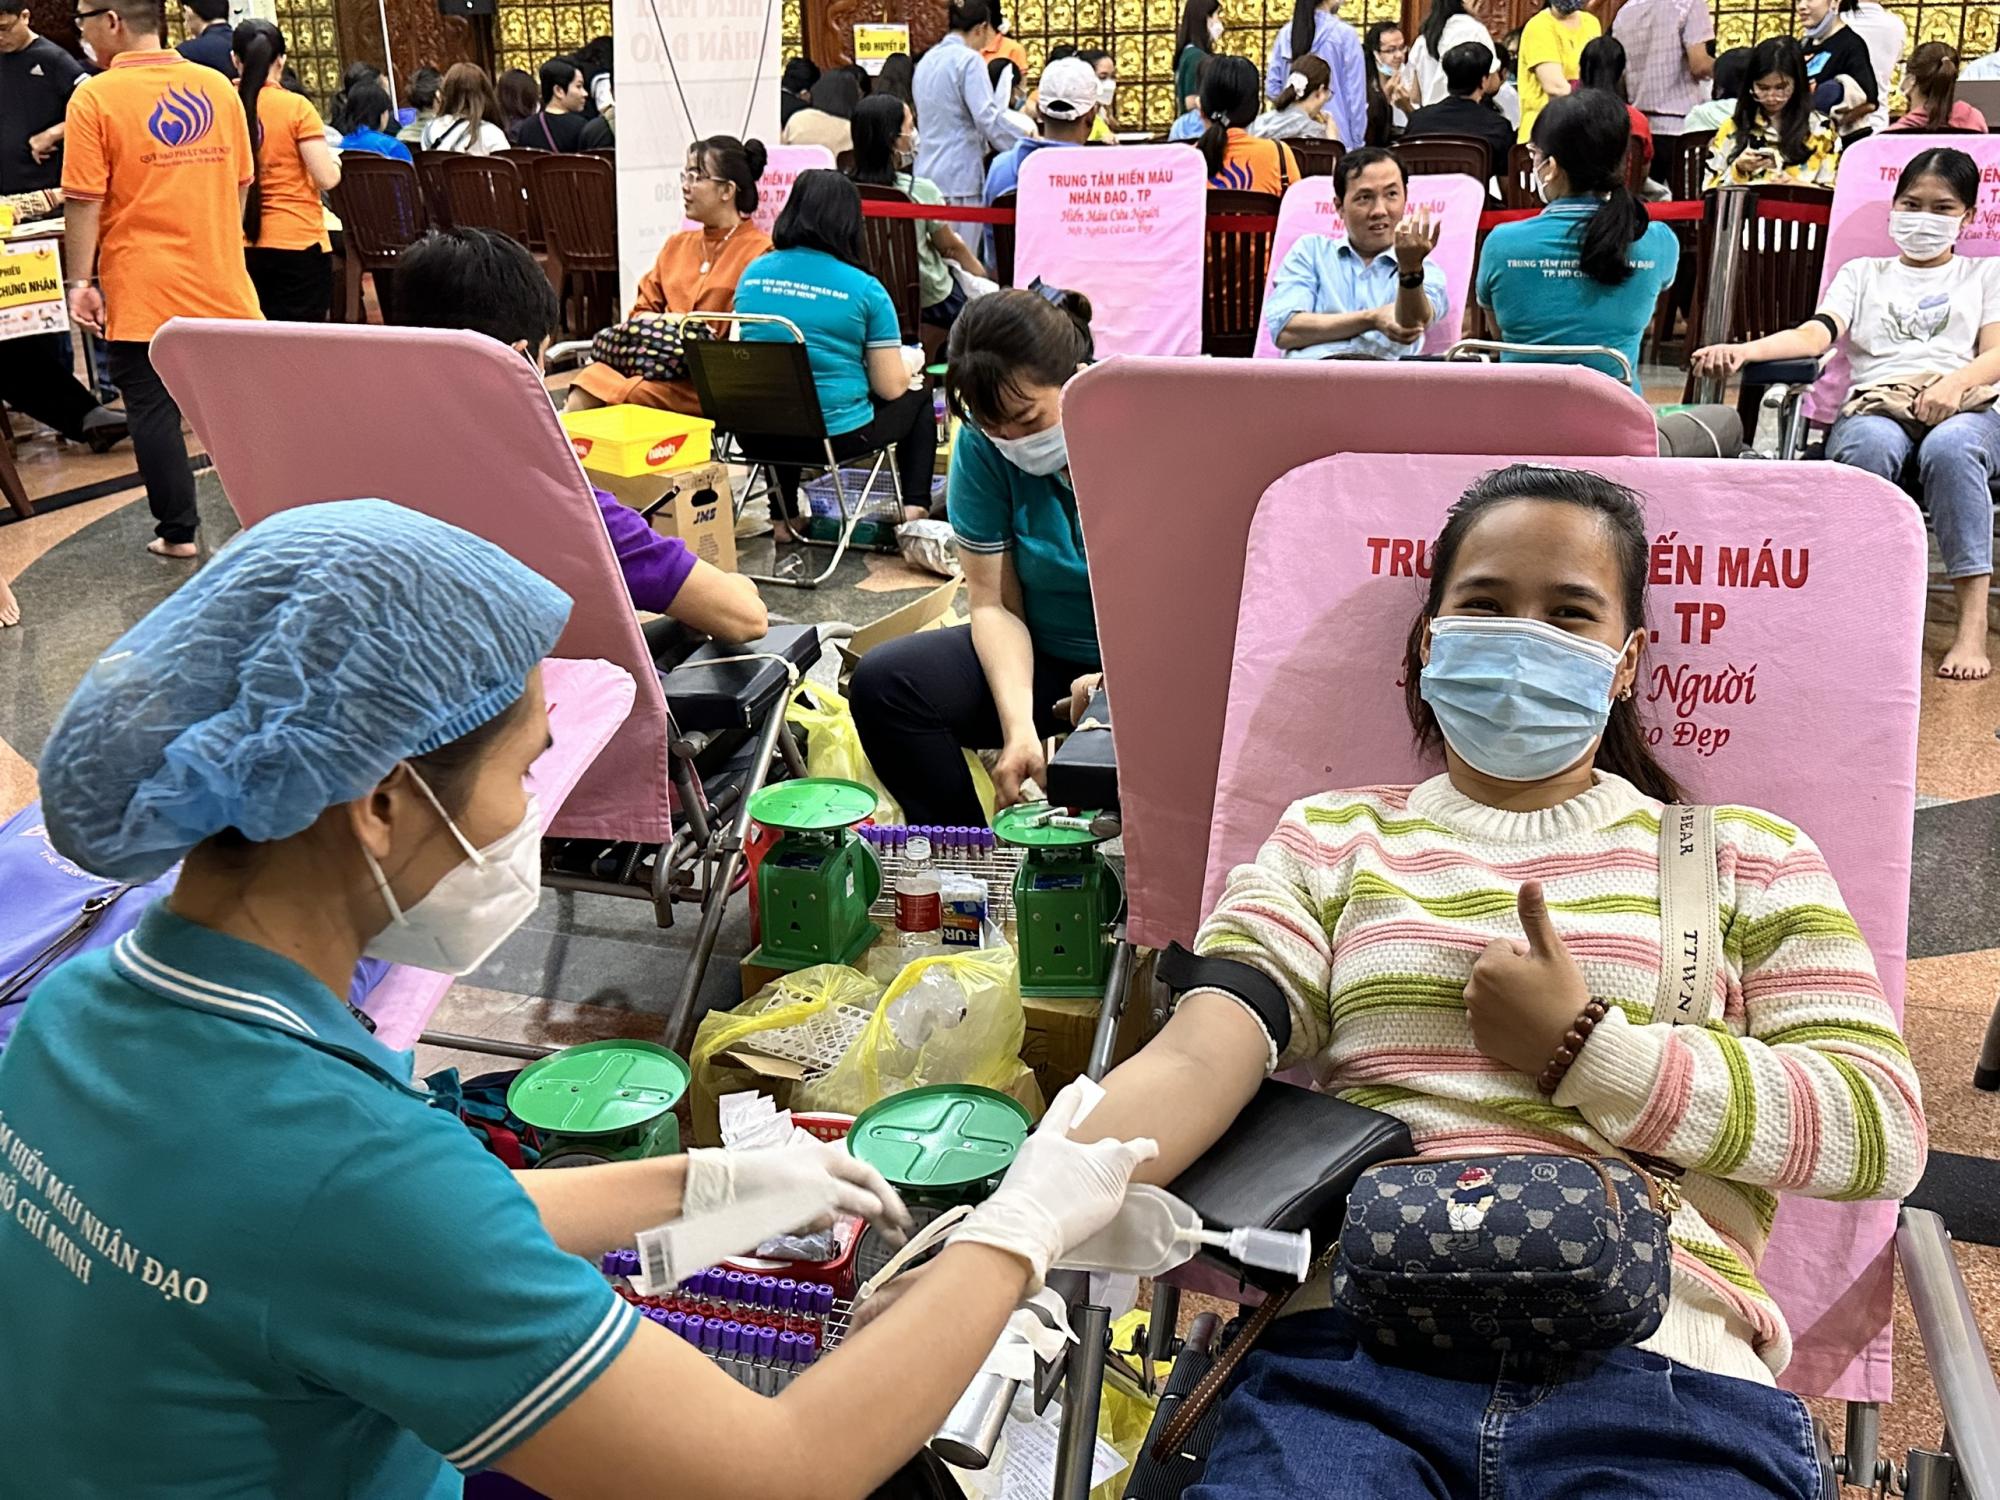 Hiên máu nhân đạo lần thứ 68: Gần 300 đơn vị máu được hiến tặng